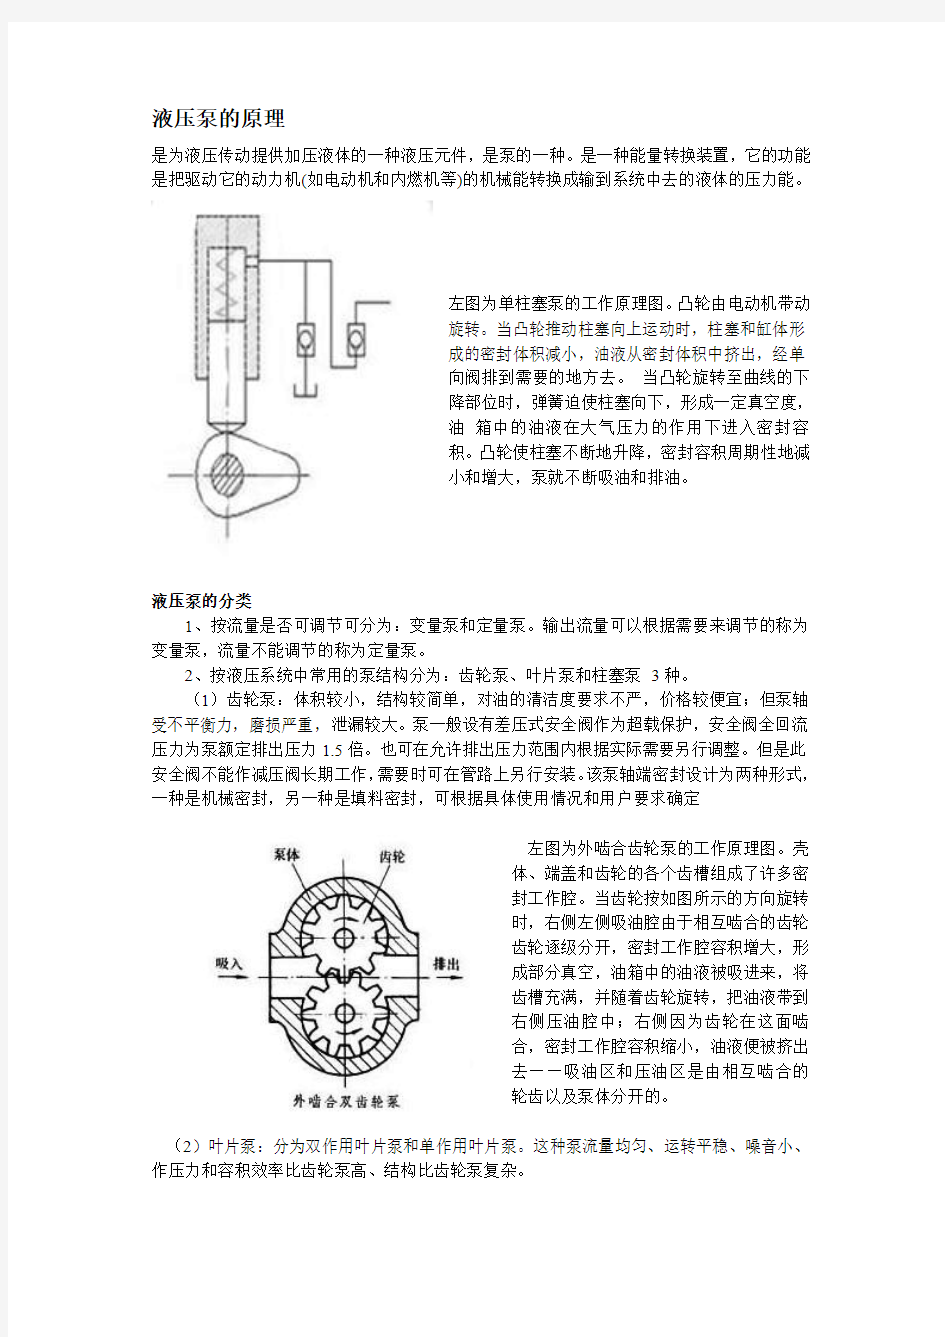 液压泵、液压马达与液压缸的工作原理、区别及应用